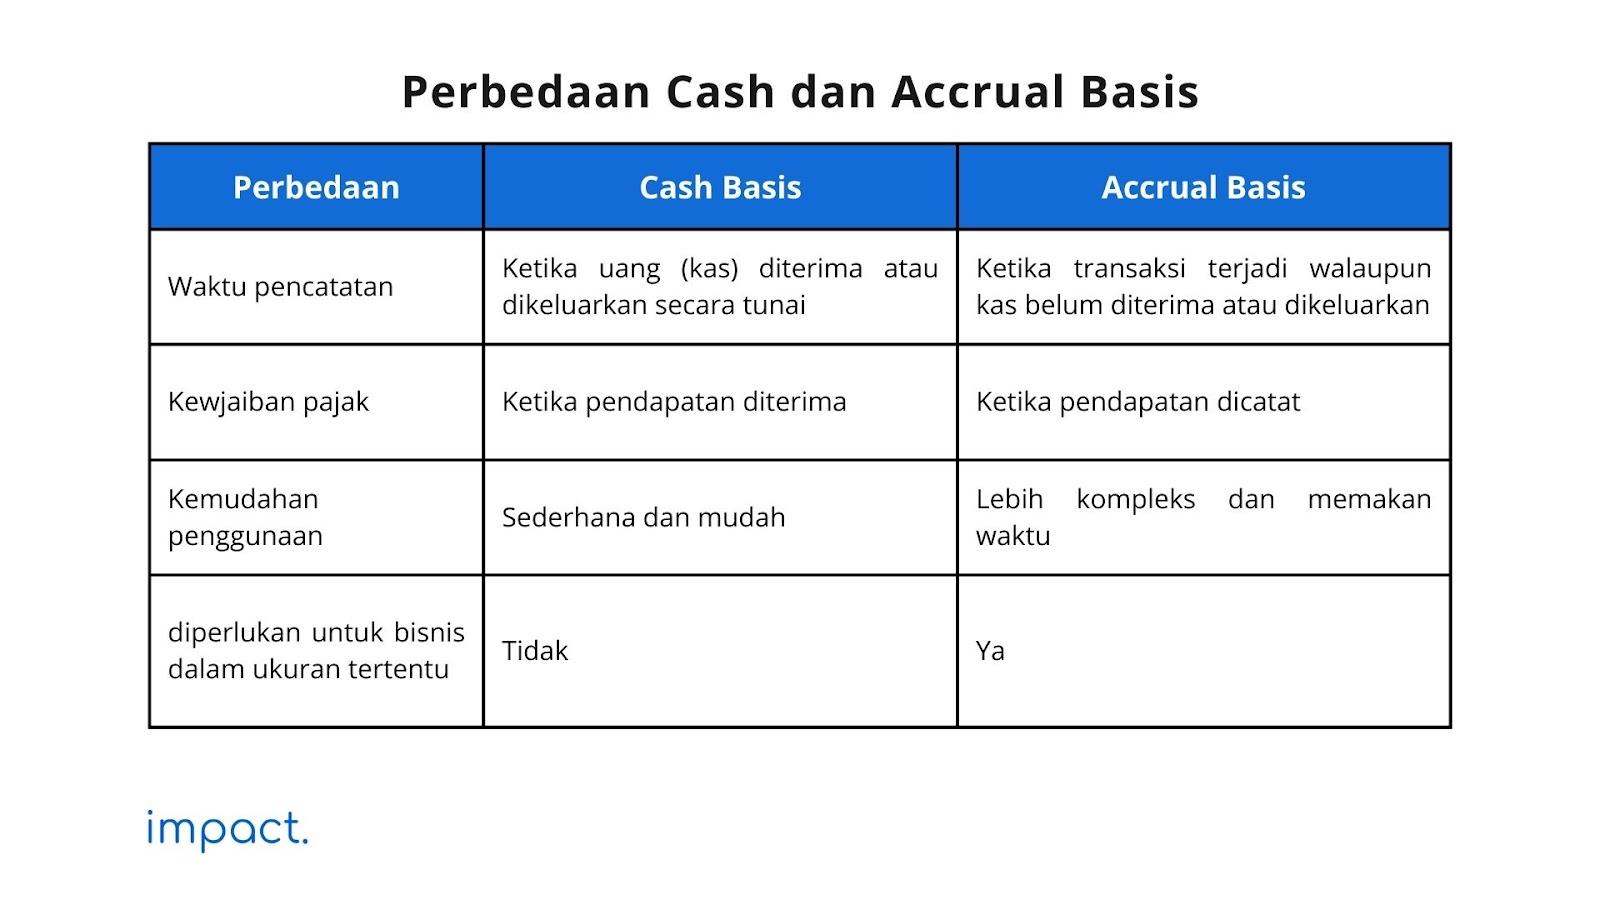 Perbedaan Cash basis dan Accrual Basis